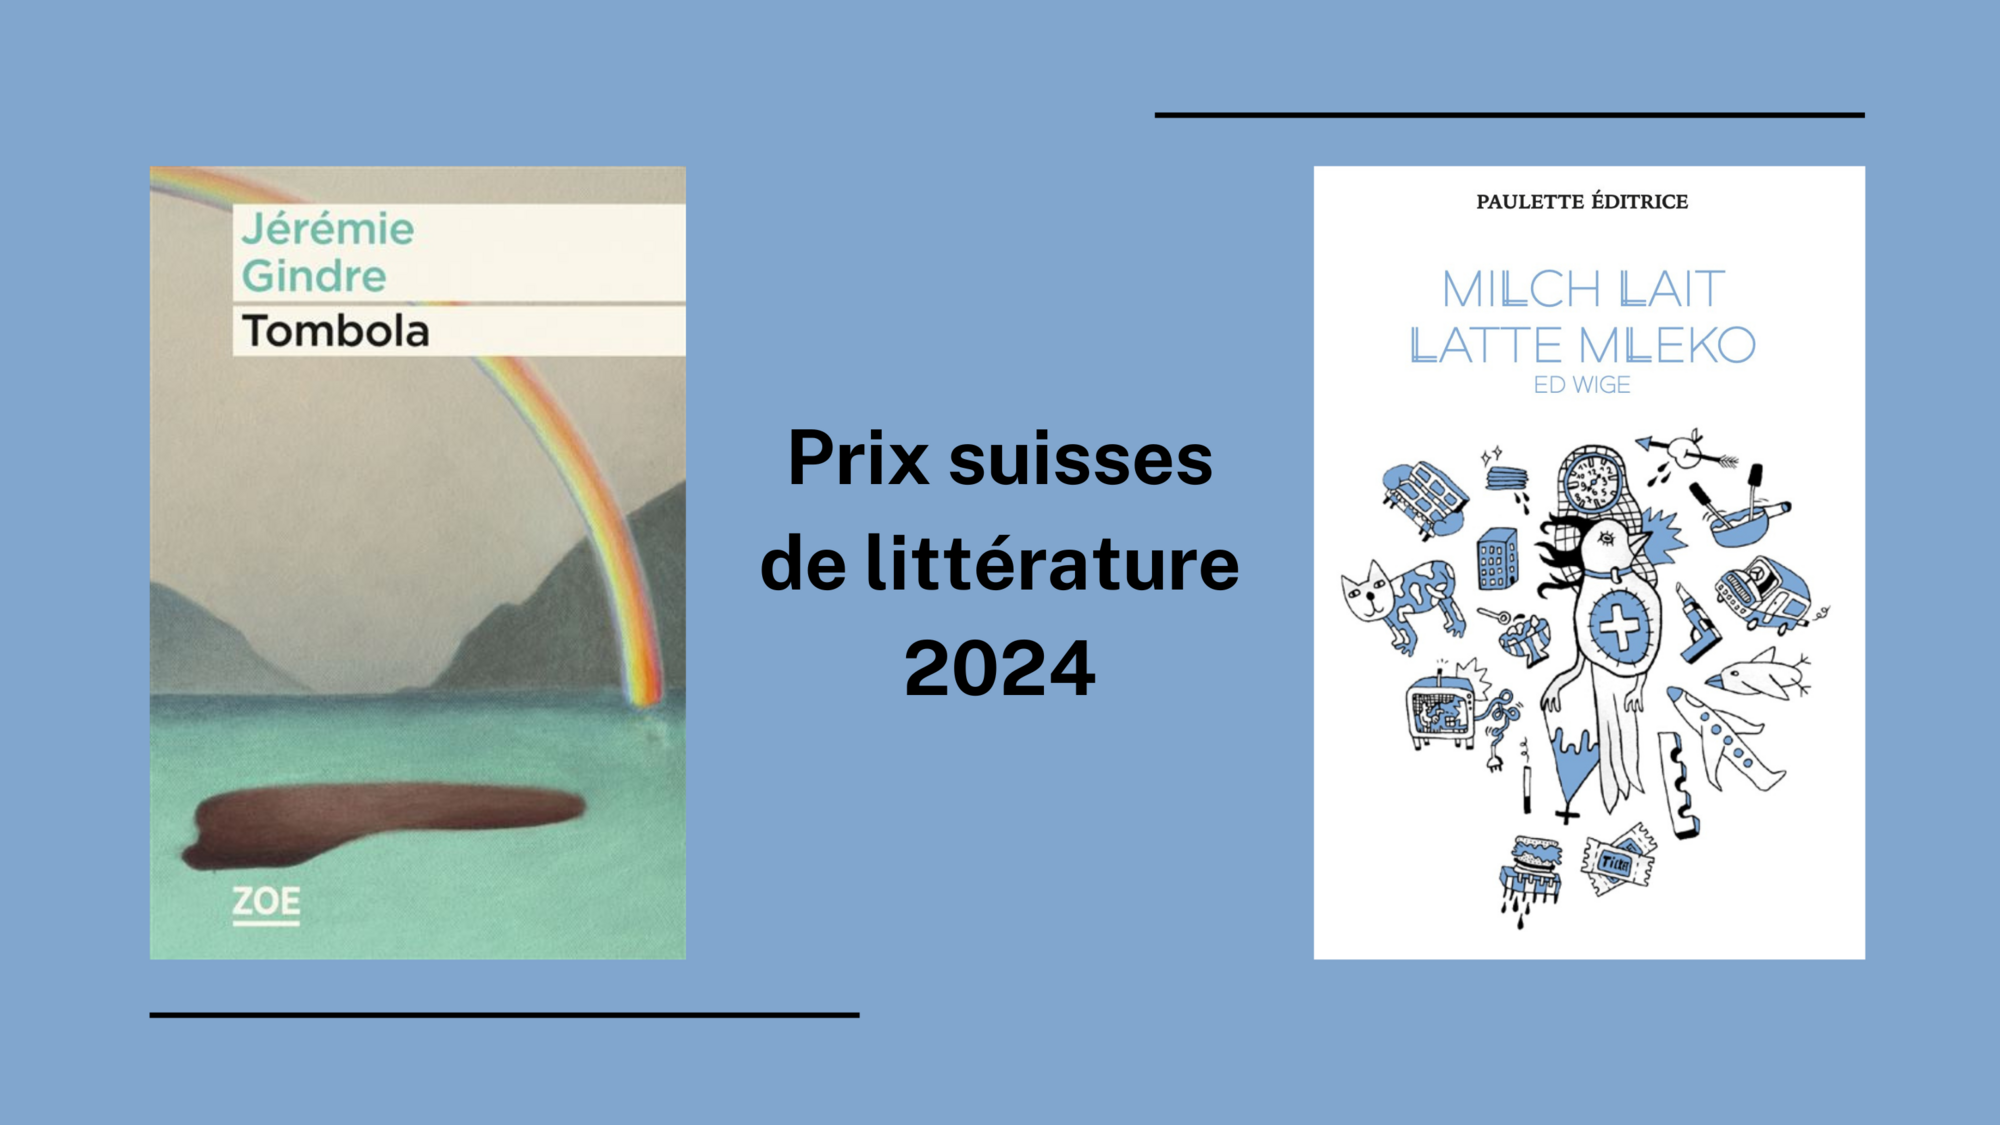 Deux prix suisses de littérature 2024